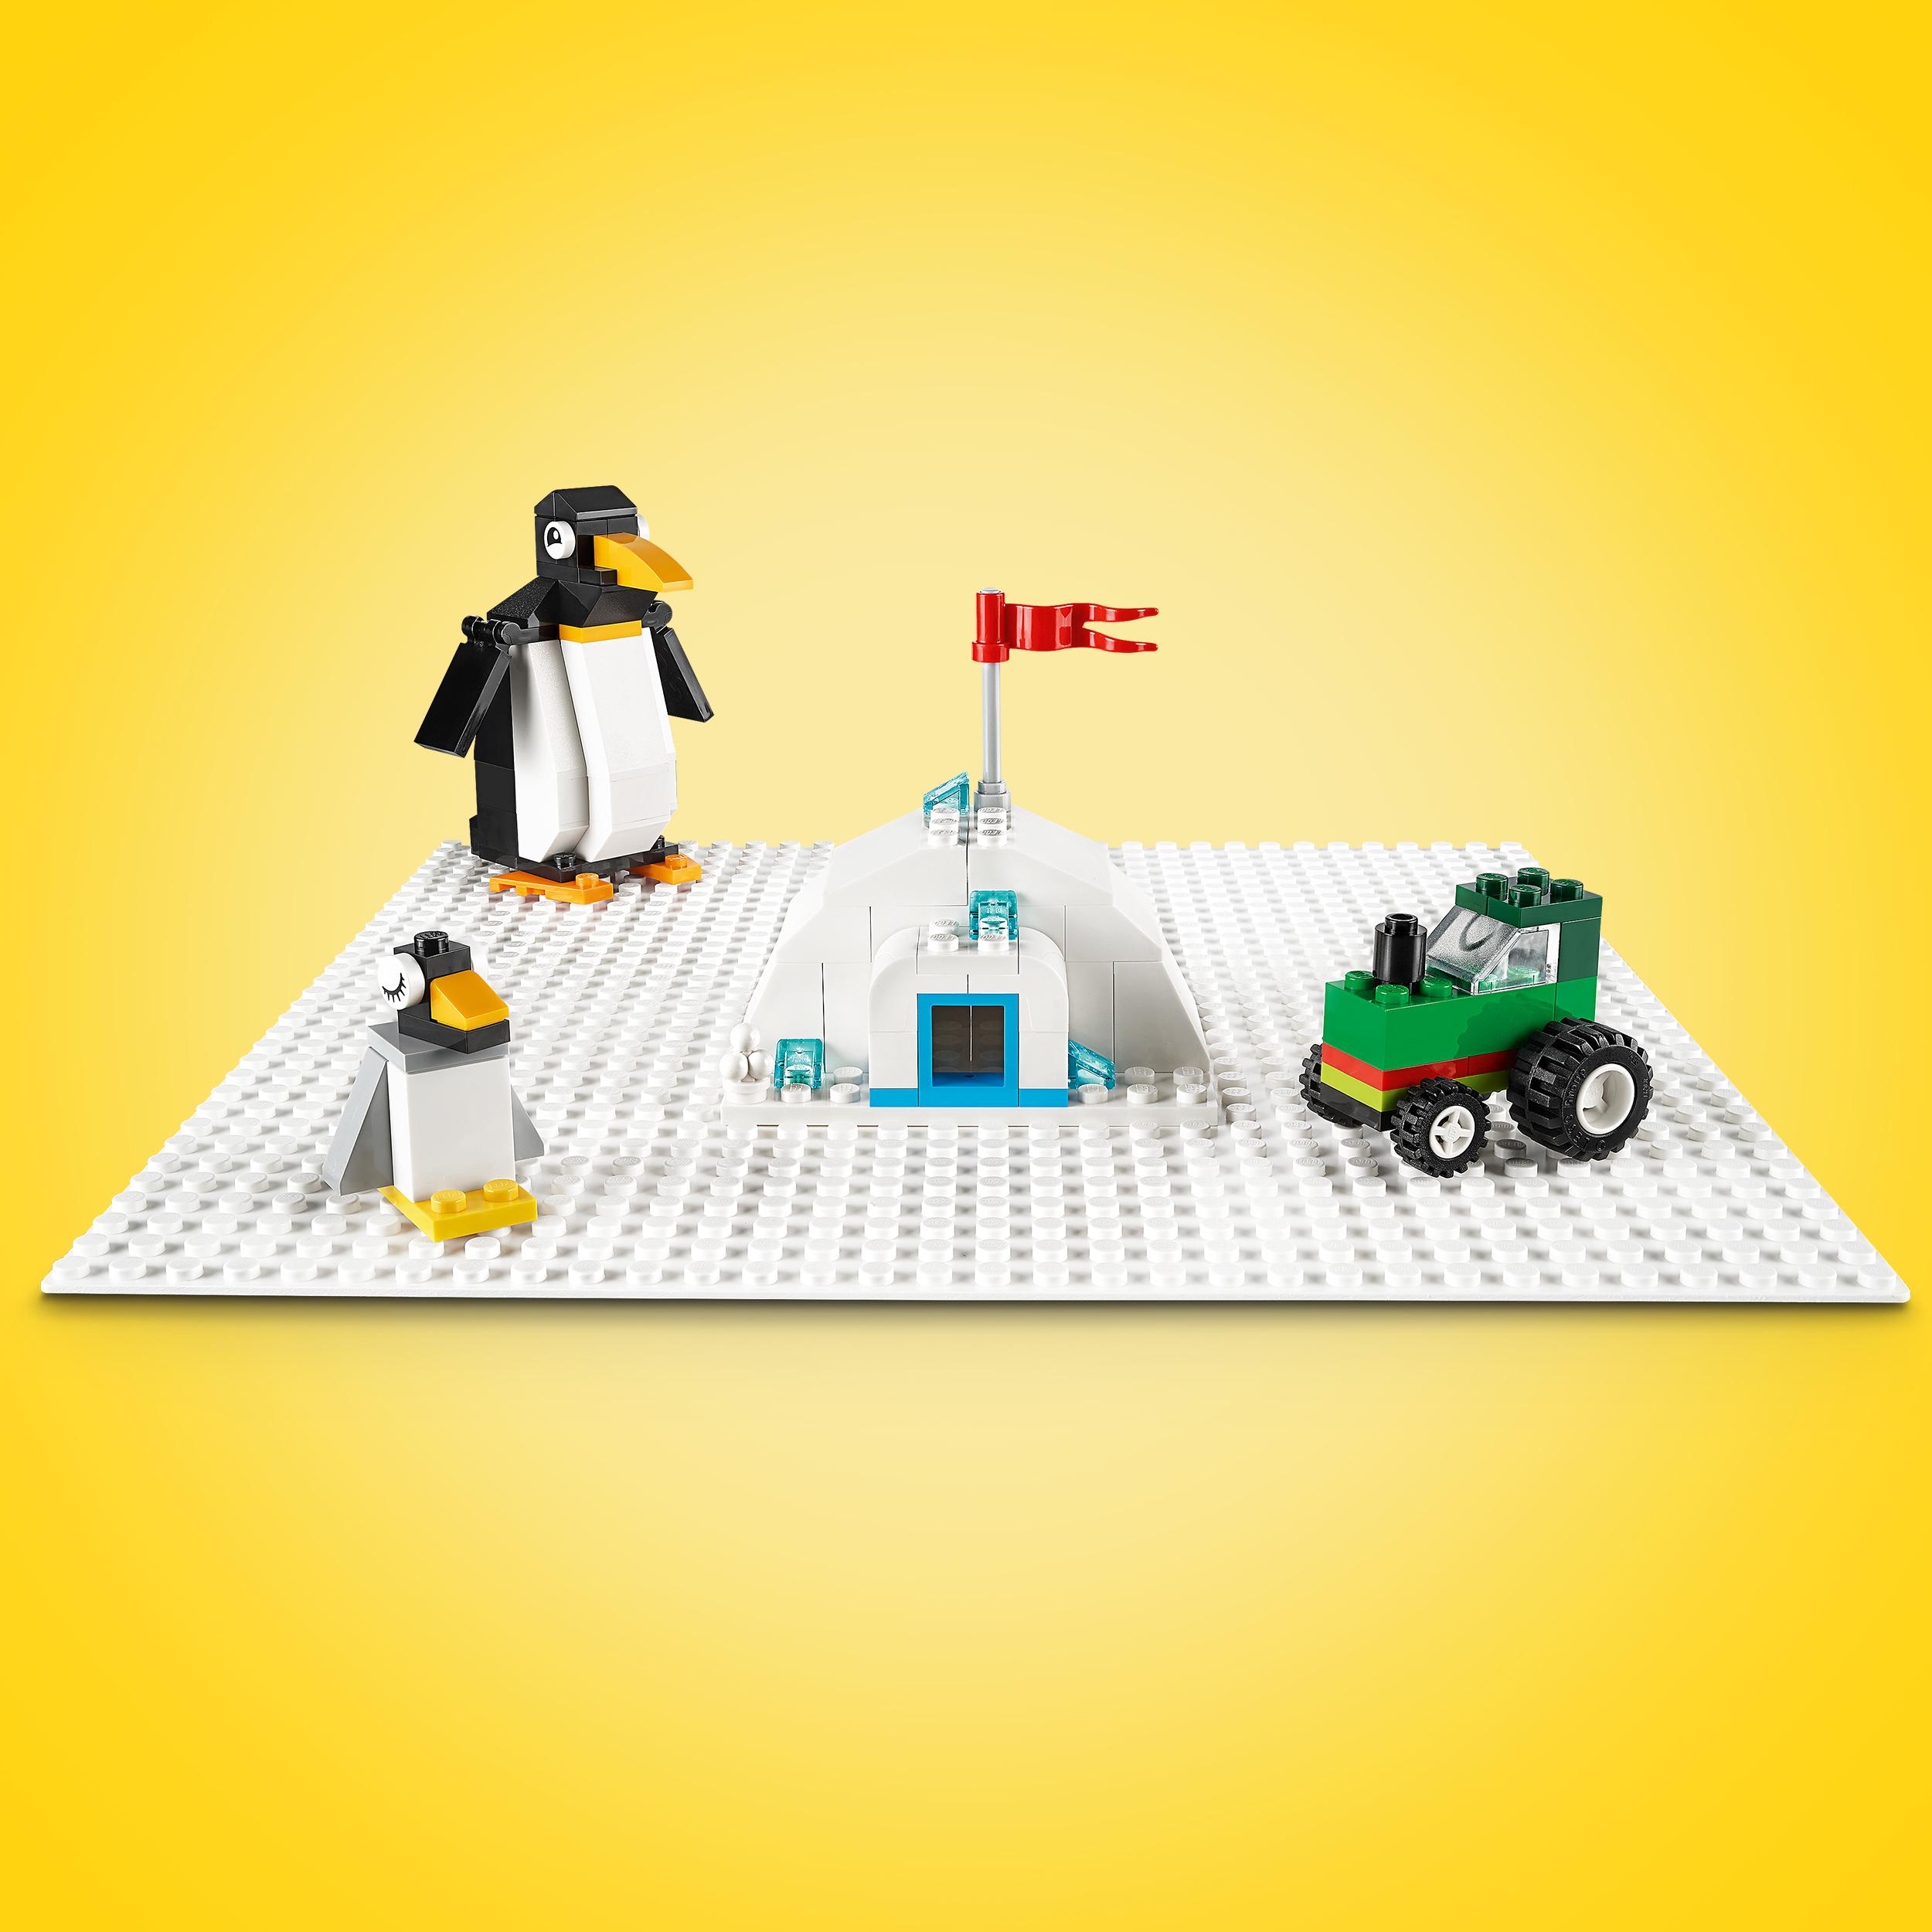 Lego classic 11026 base bianca, tavola per costruzioni quadrata con 32x32 bottoncini, piattaforma classica per mattoncini - LEGO CLASSIC, Lego